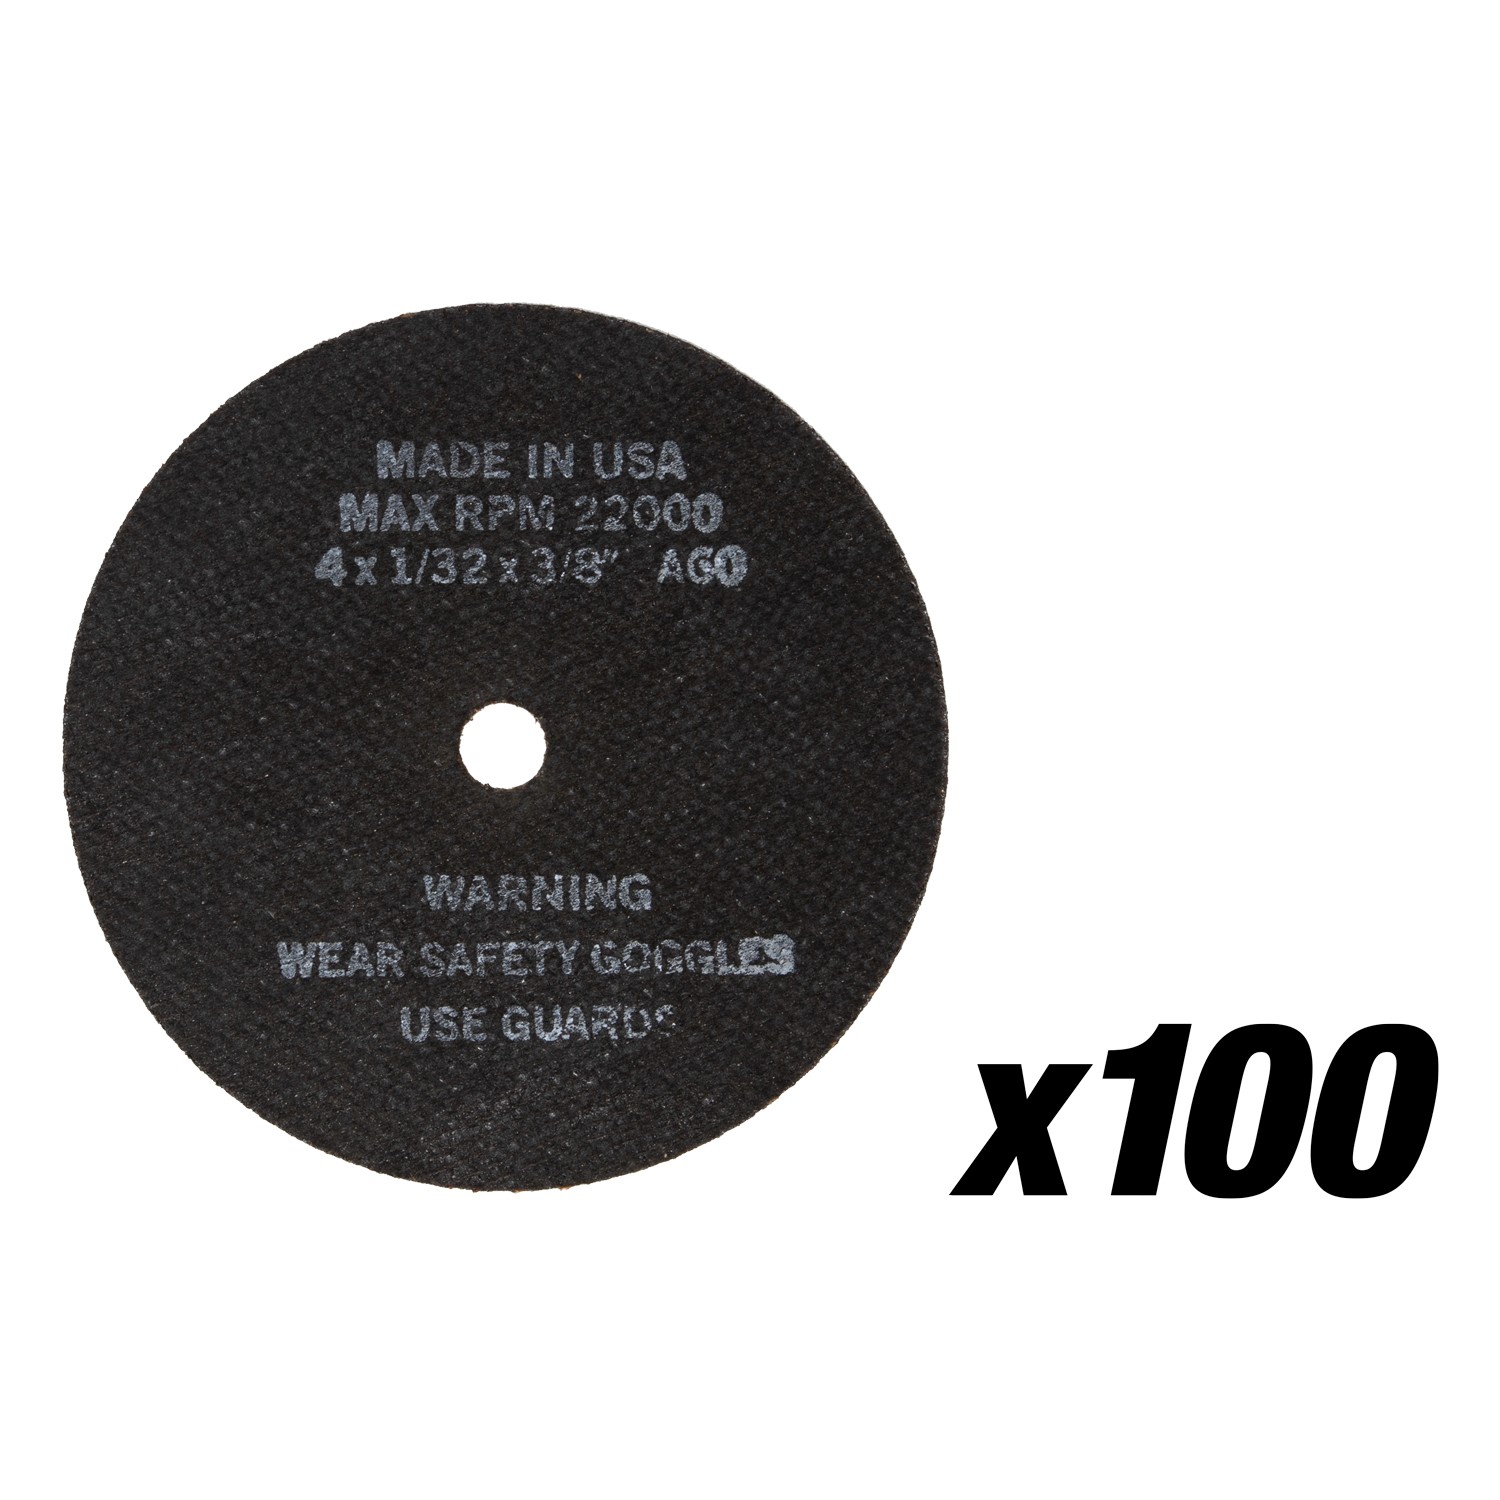 4" x 1/32" Type 1 Industrial Grade Metal Cut-Off Wheel - 100 Pack